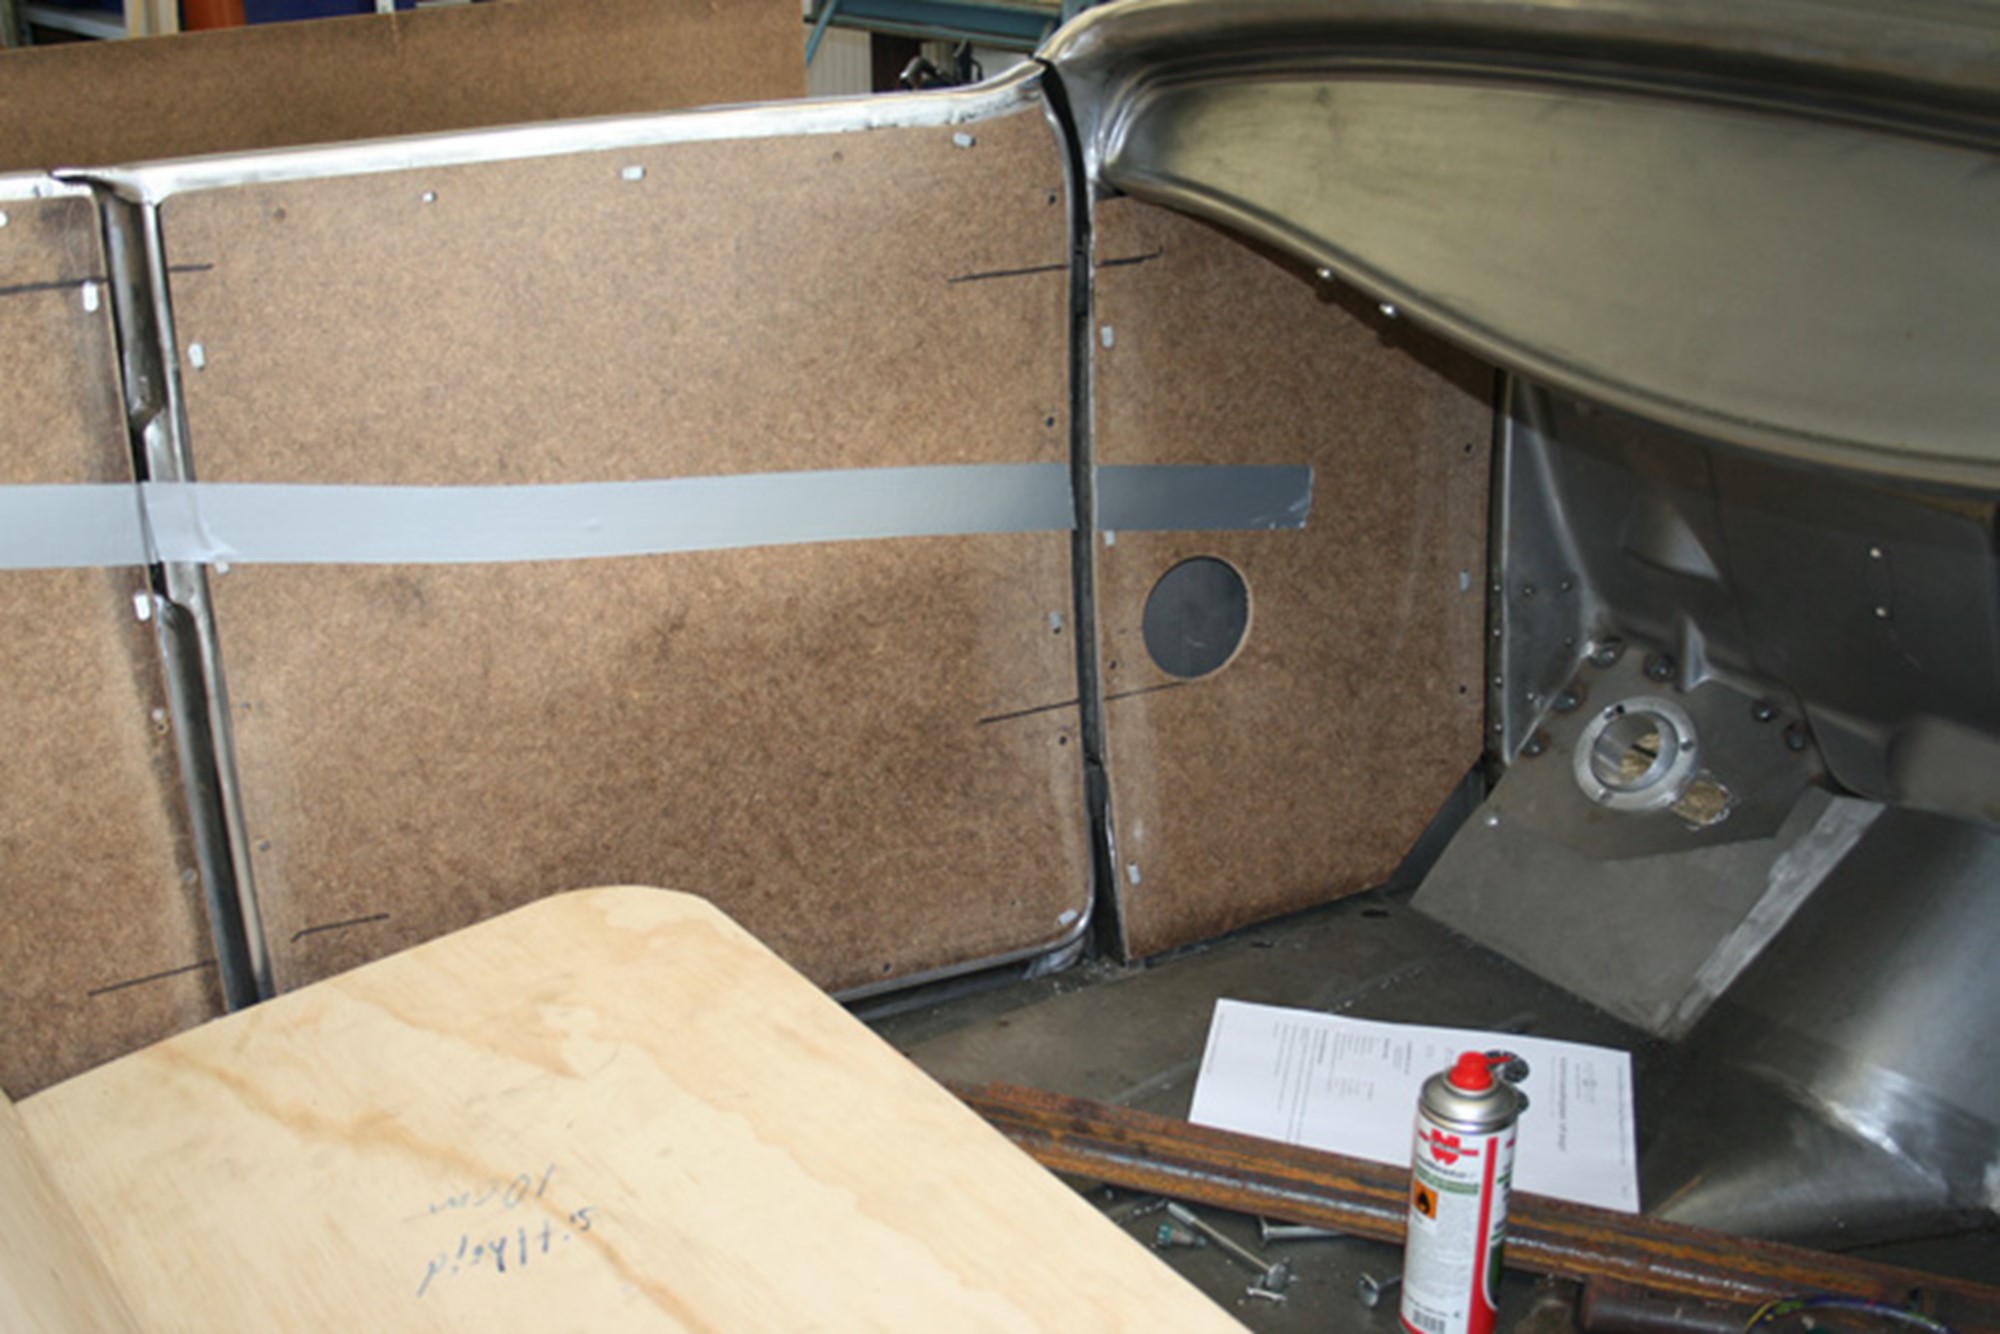 Inredningen mallade vi upp sidorna i massonit och sätet i plywood.